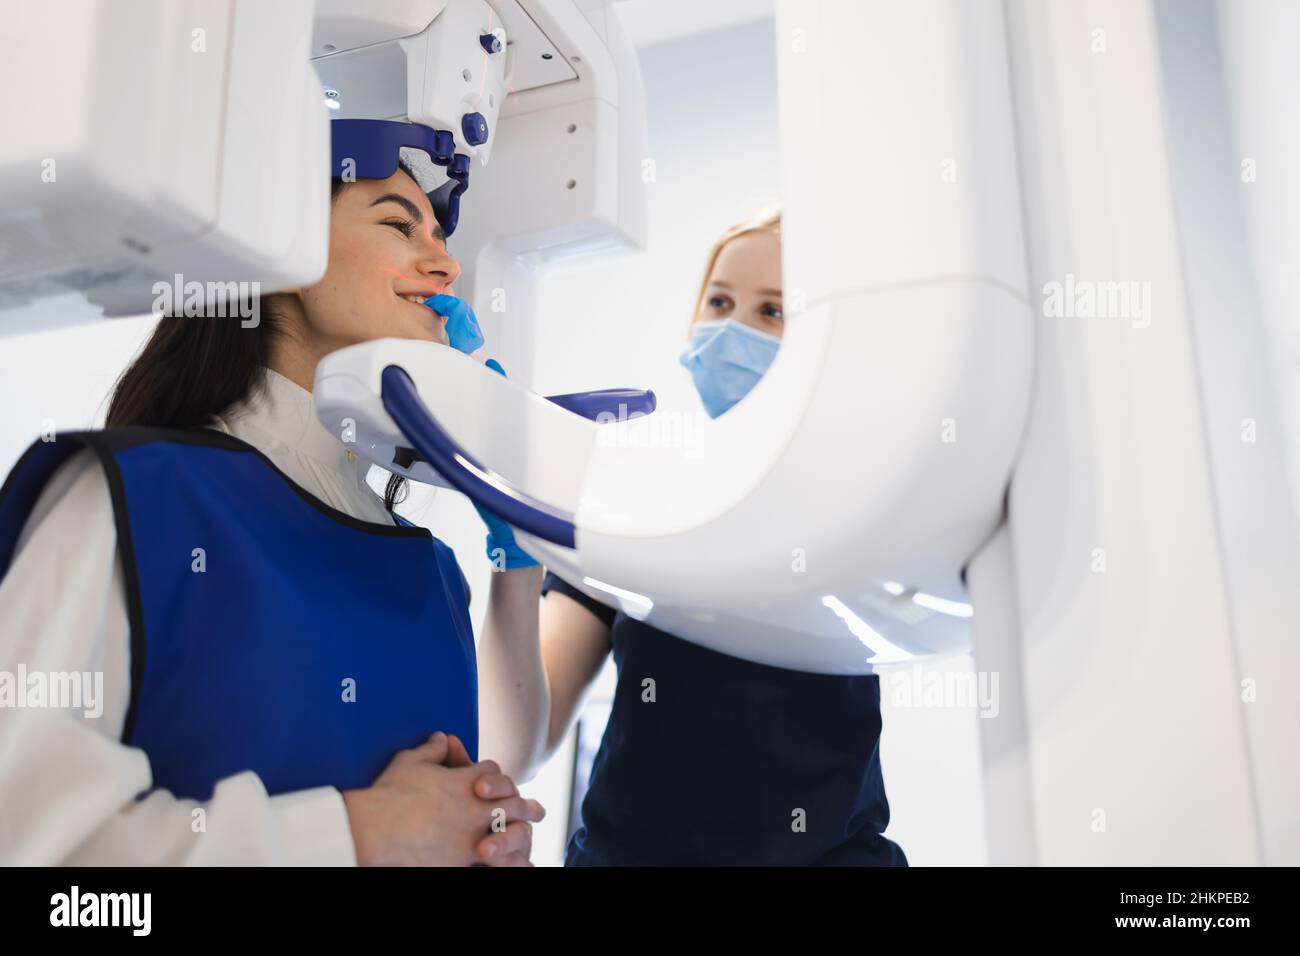 Une patiente fait un tomographe à ordinateur dentaire.Le radiologue effectue une acquisition CT de la mâchoire Banque D'Images